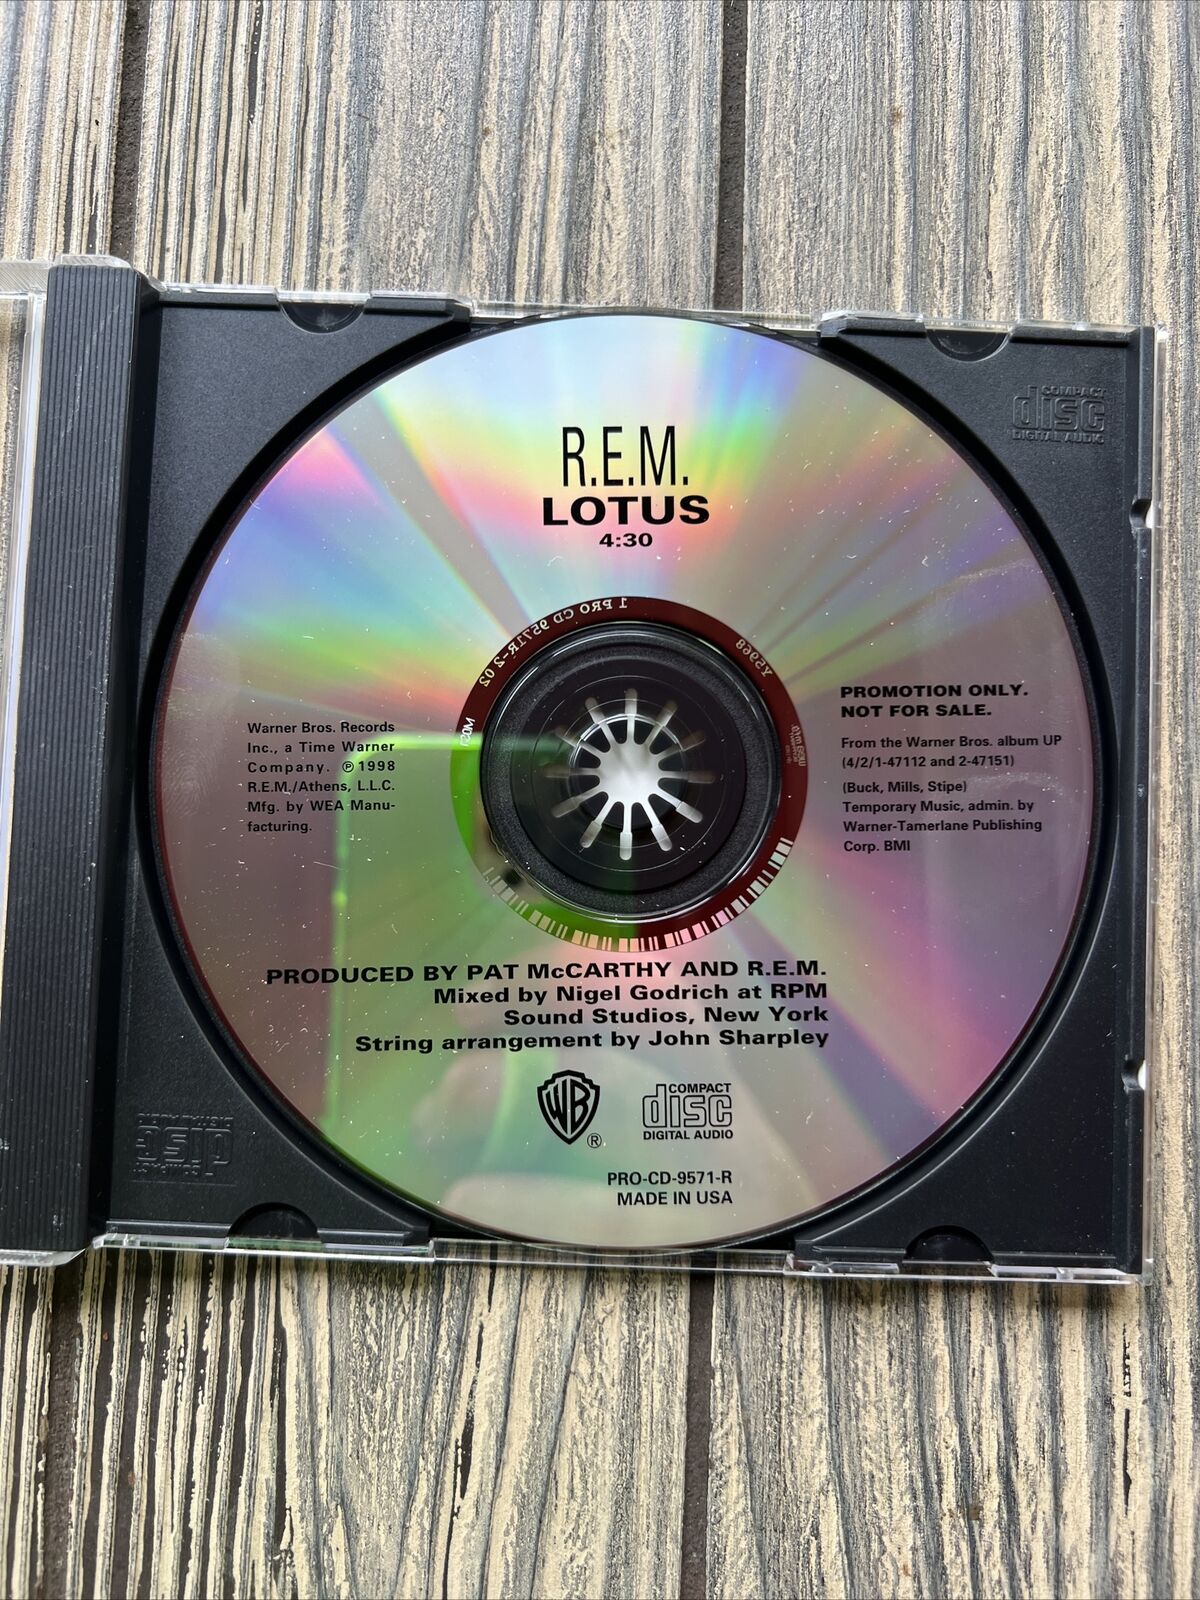 RARE R.E.M. Lotus Promo CD 1998 REM